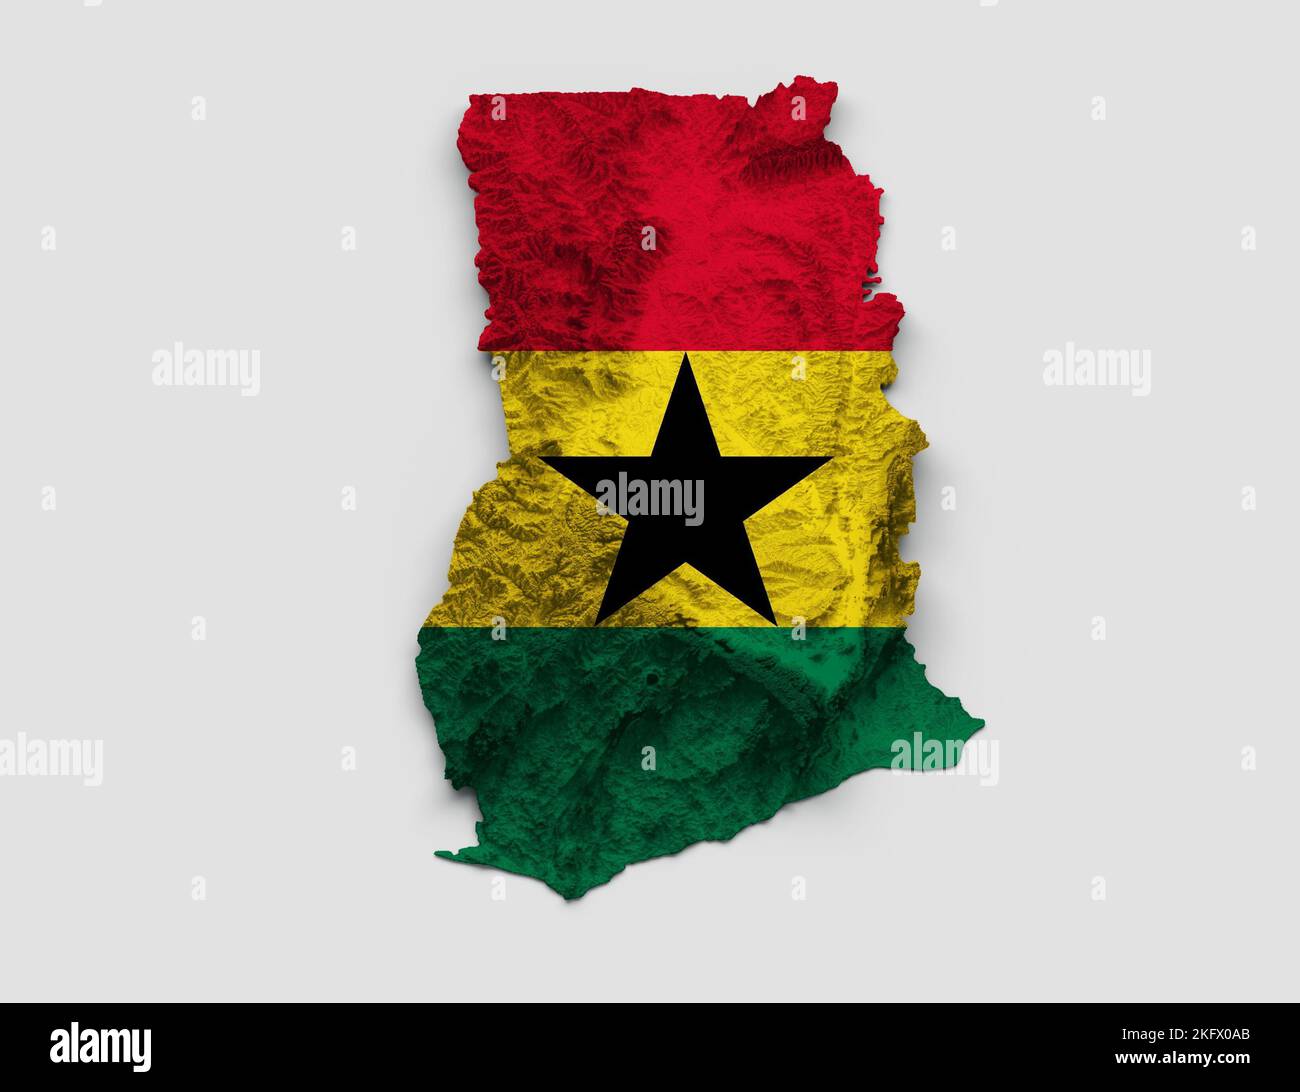 Illustration de la carte du Ghana en 3D avec relief ombré de couleurs de drapeau sur fond blanc Banque D'Images